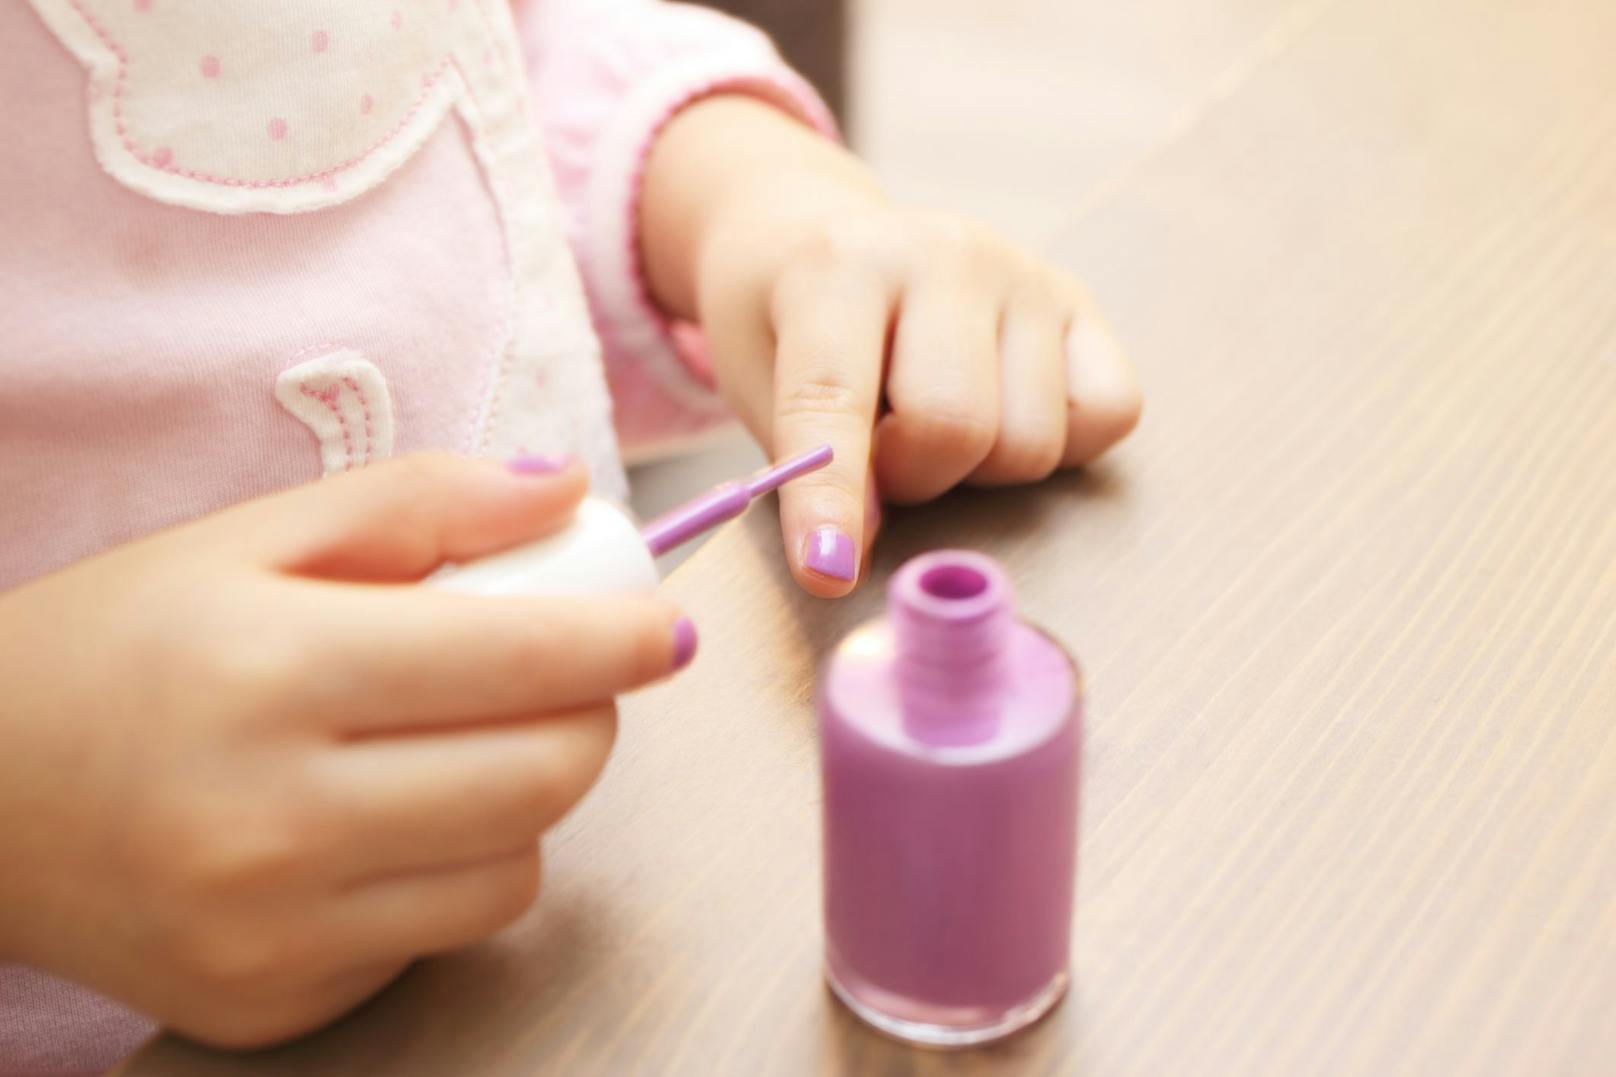 Kinder färben sich oft gerne ihre Nägel. Doch dabei ist Vorsicht geboten, warnt eine aktuelle AK-Studie.